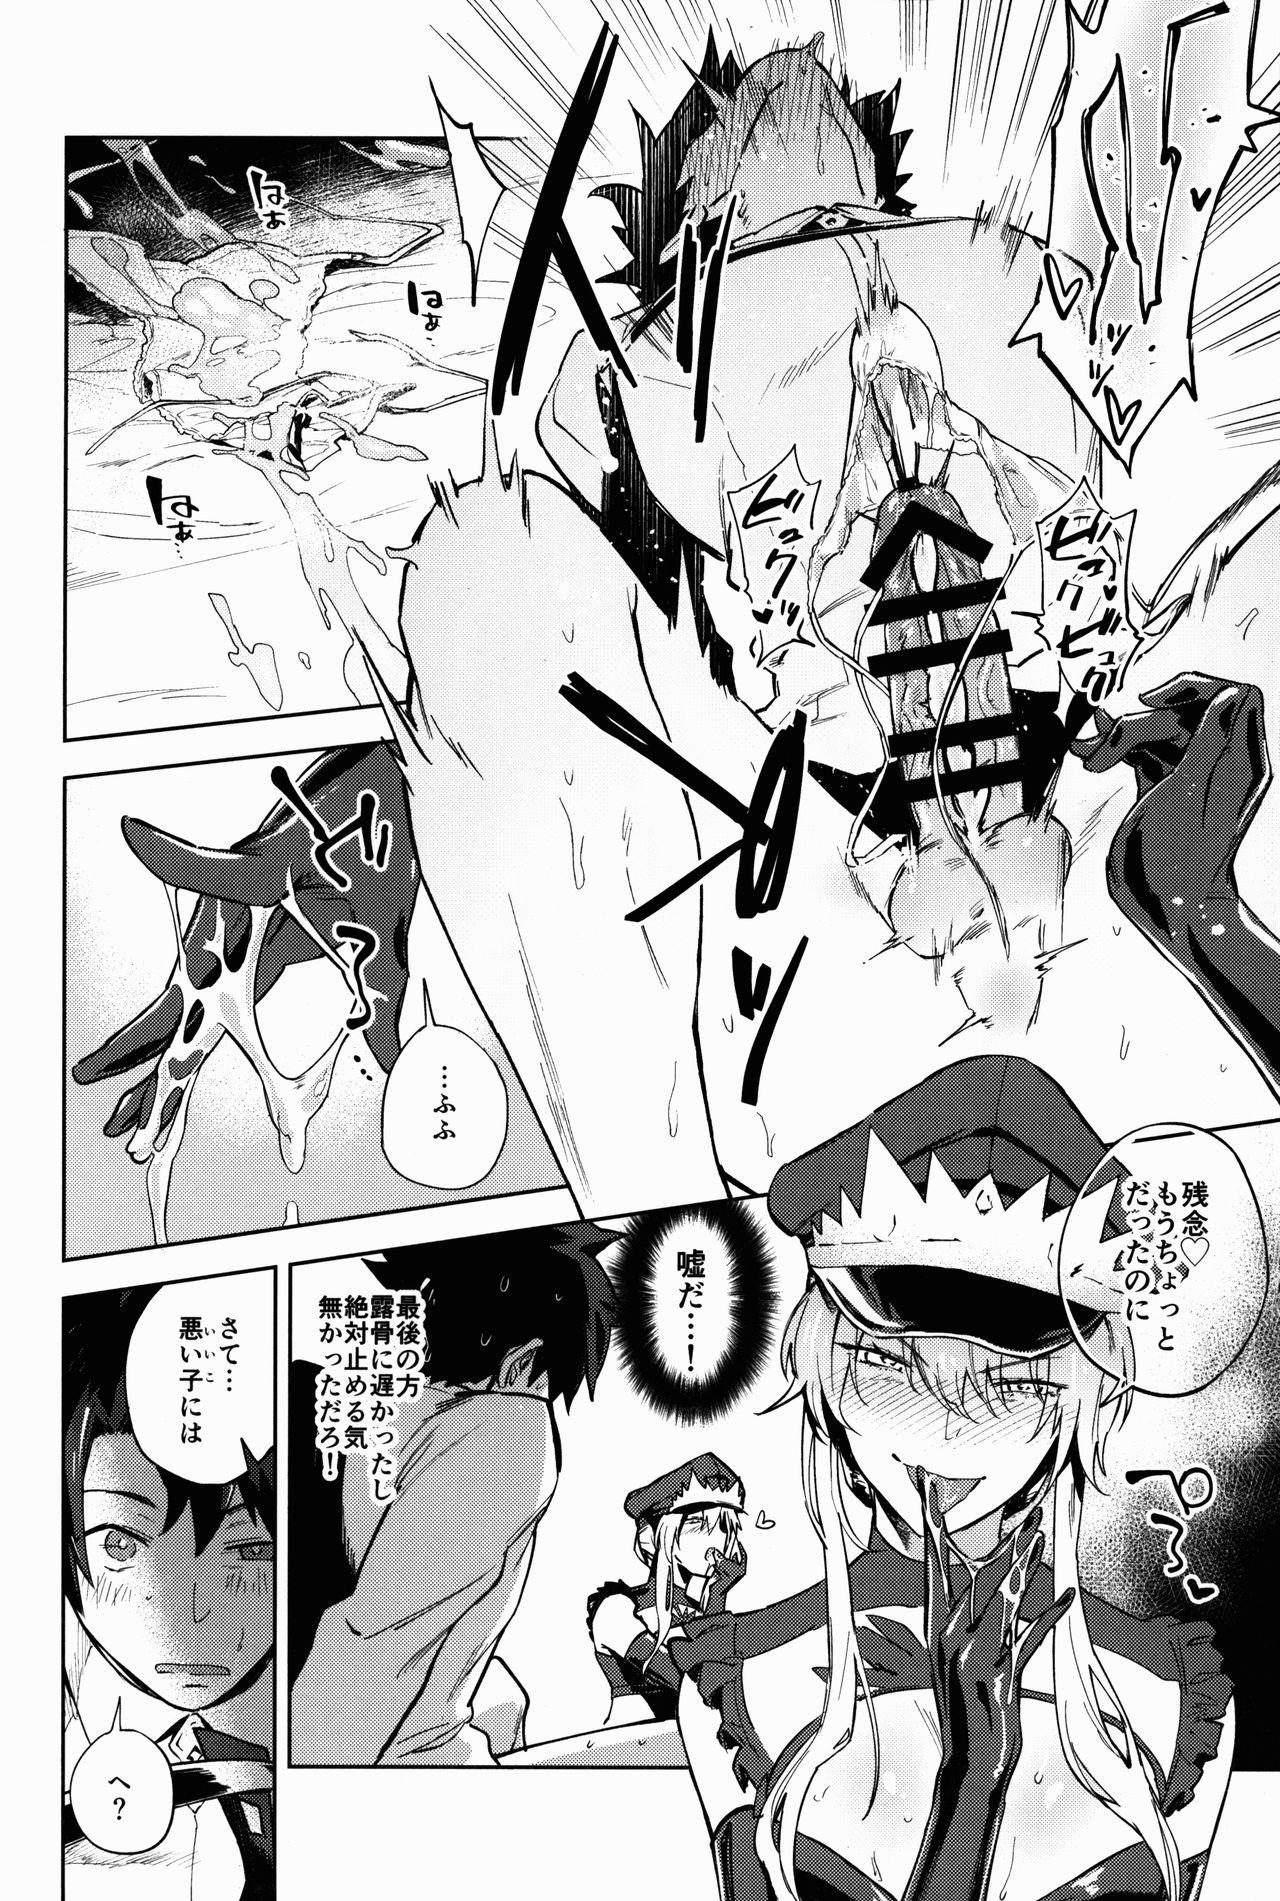 Rub Gokuchou Medb to Joou no Shitsuke - Fate grand order Couple - Page 8